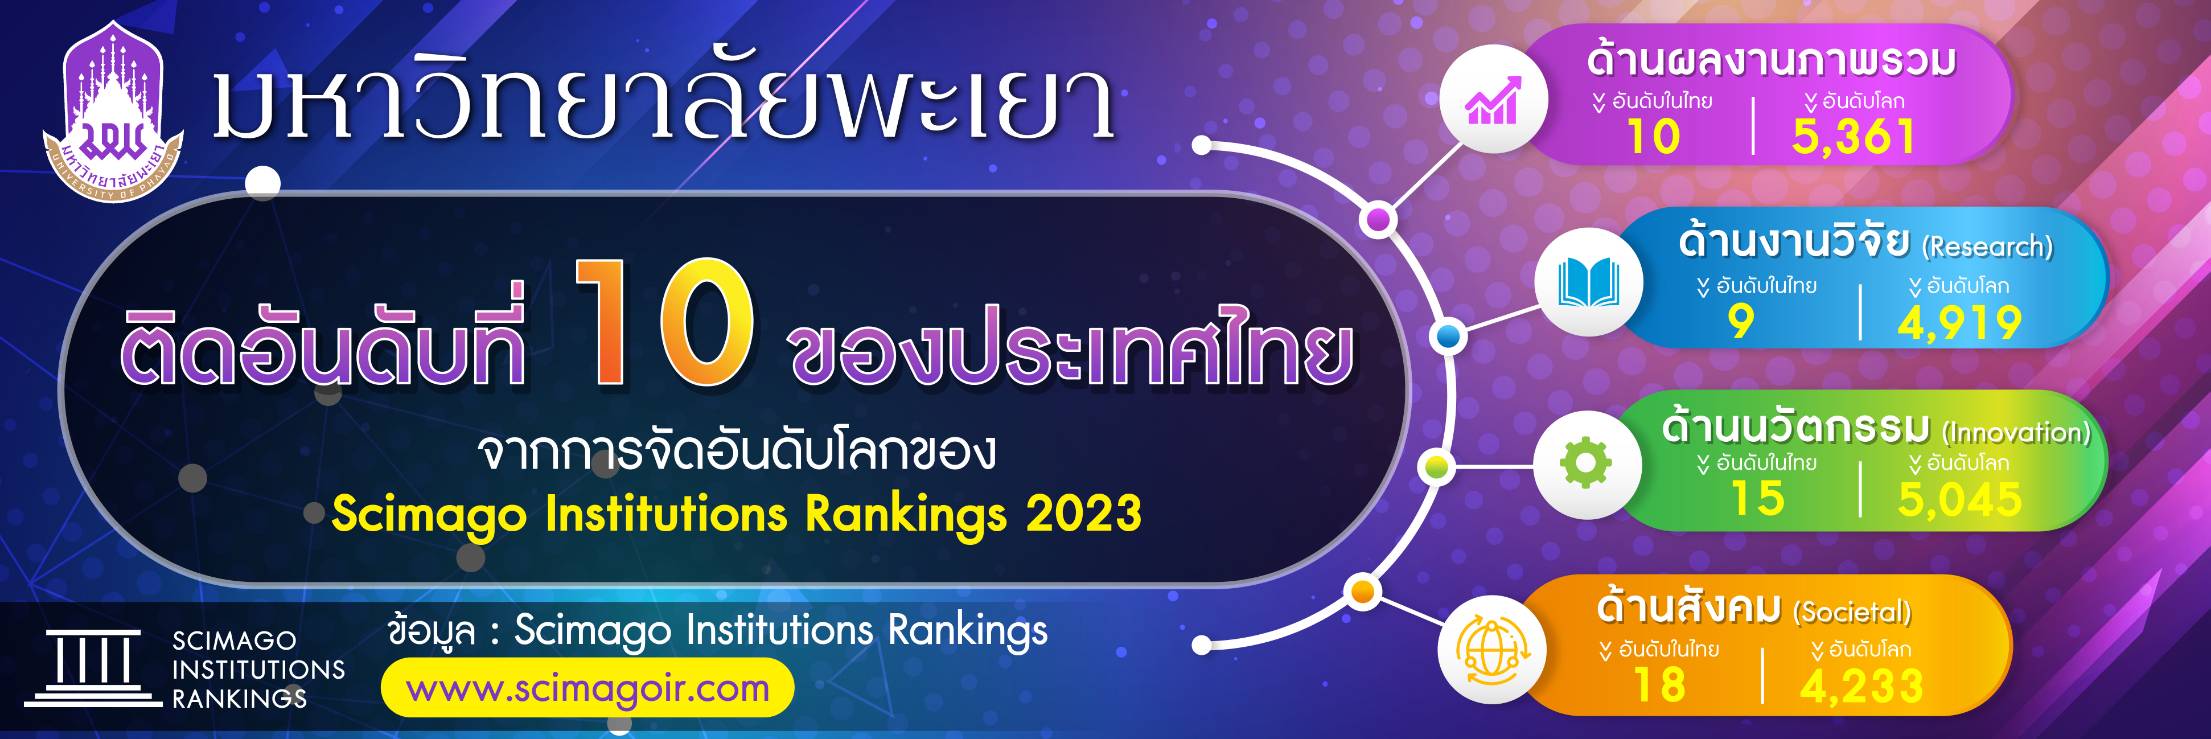 SCImago Institution Rankings 2023